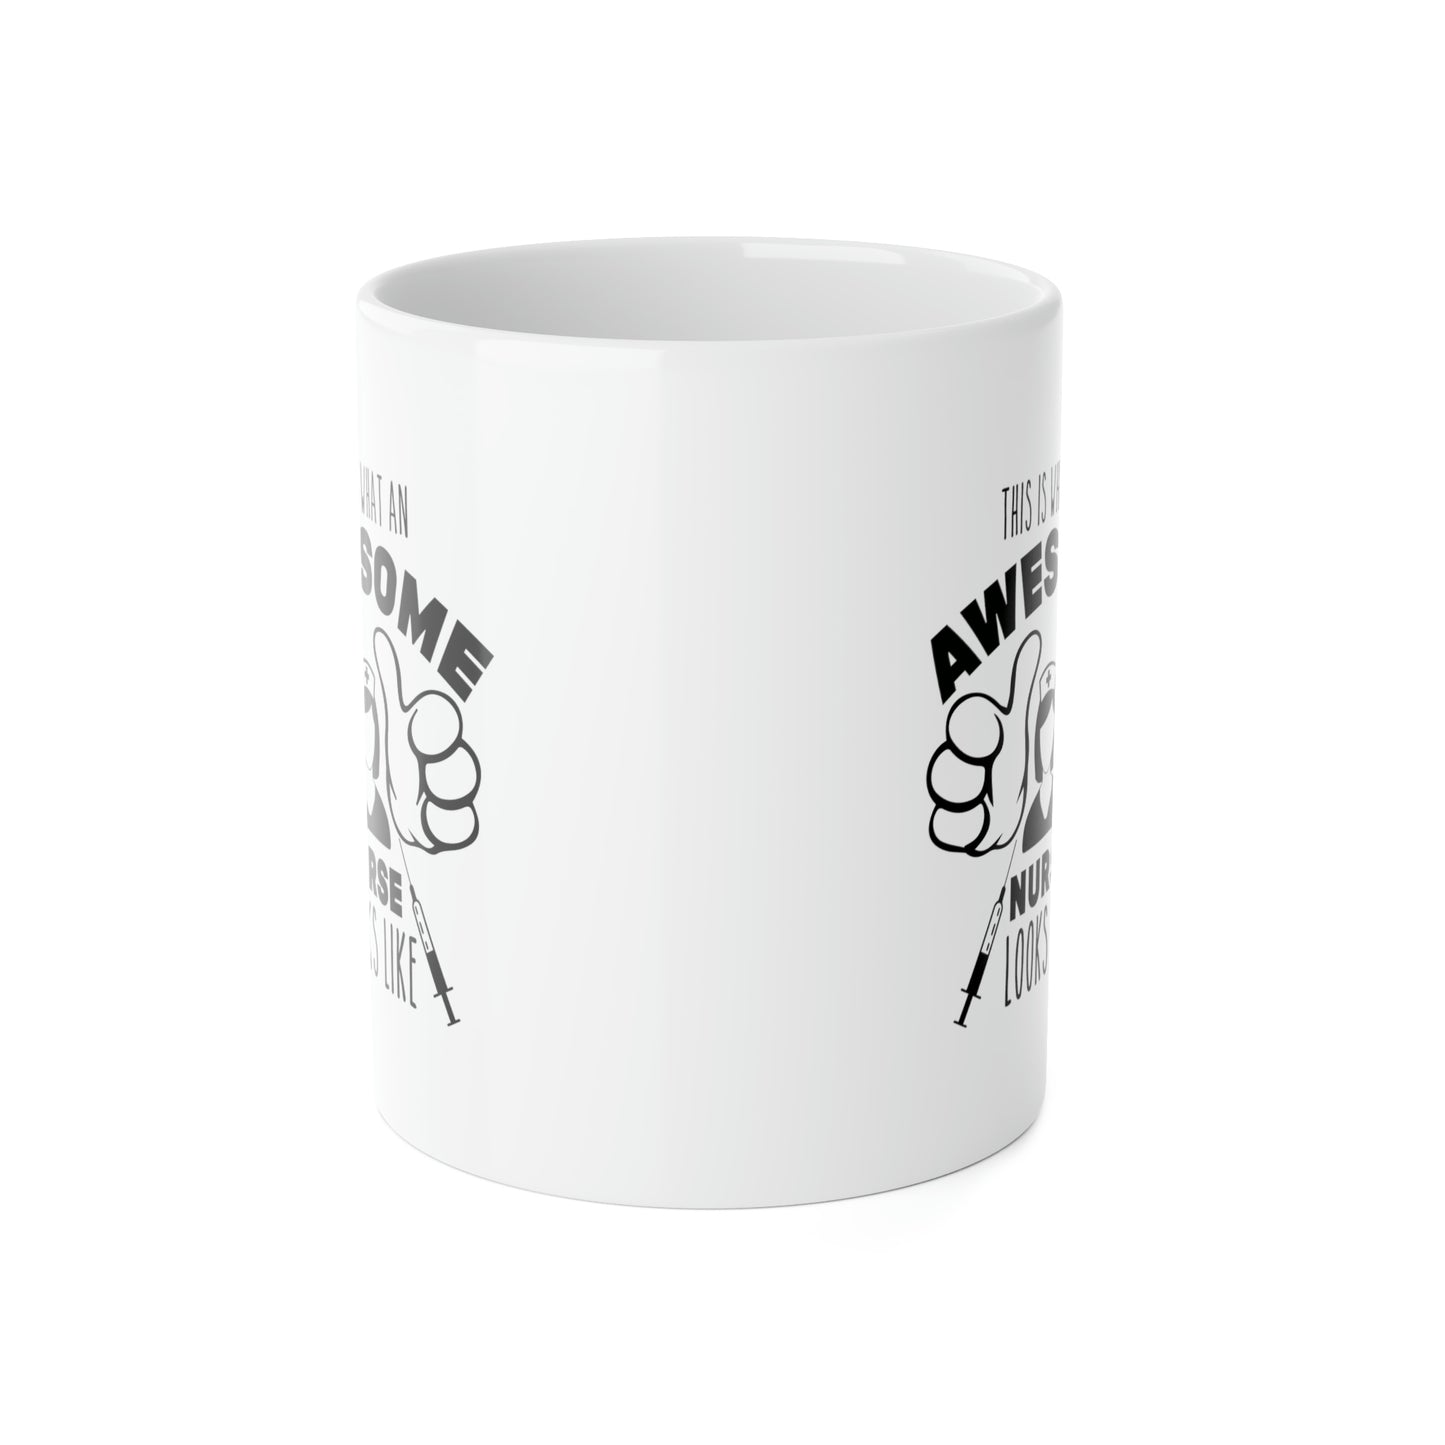 AWESOME NURSE White Ceramic Mug, 11oz